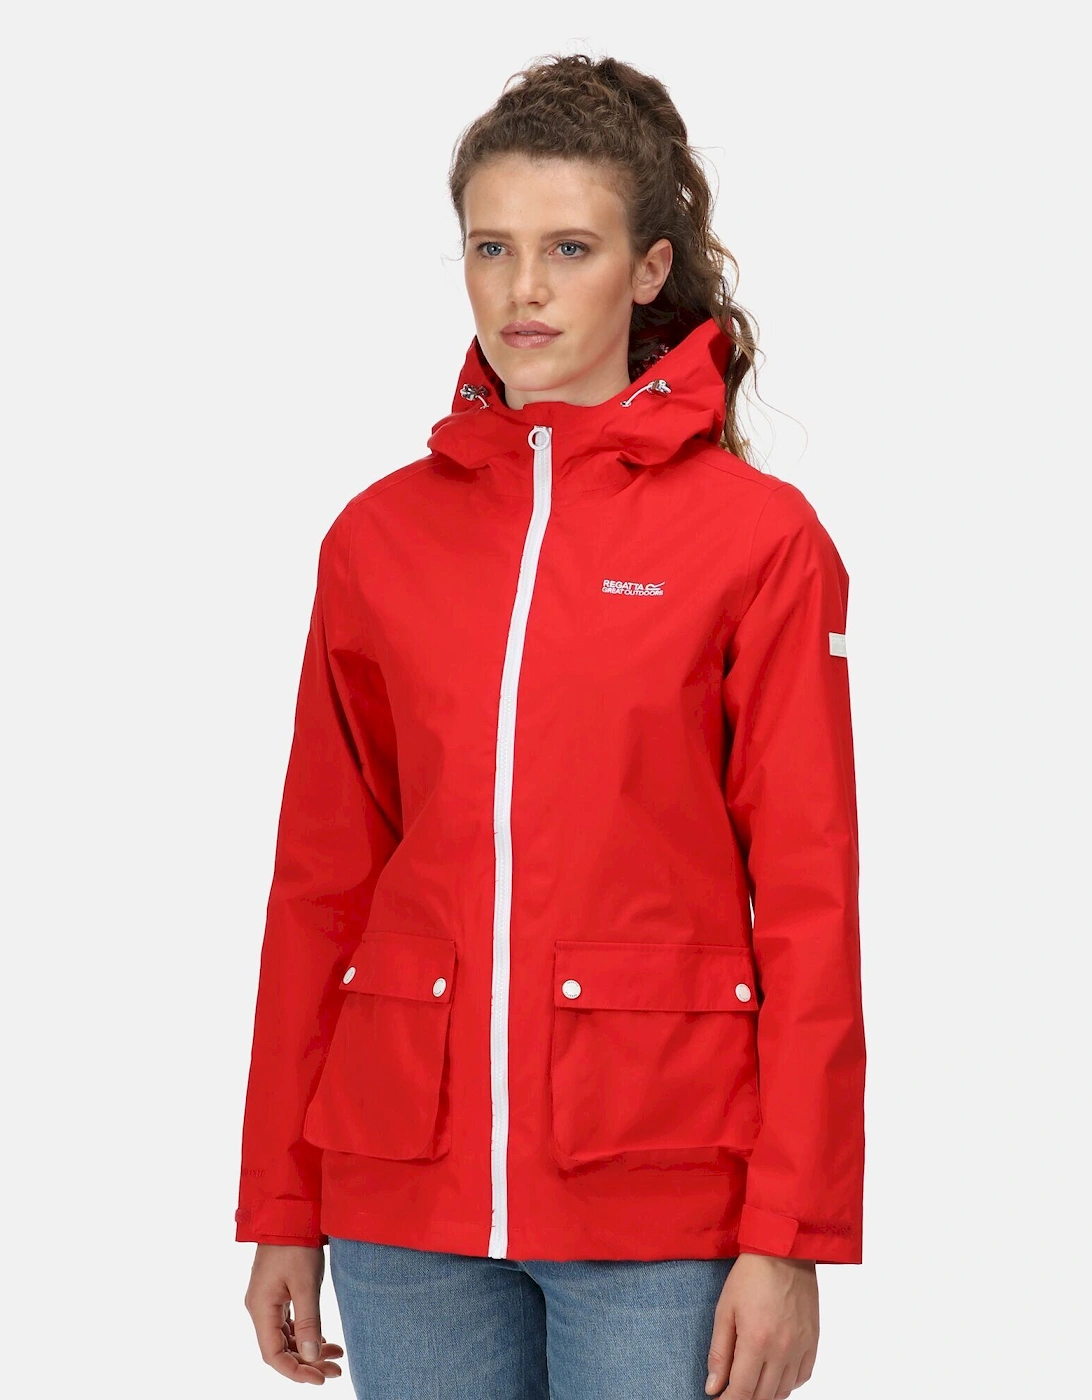 Womens/Ladies Baysea Waterproof Jacket